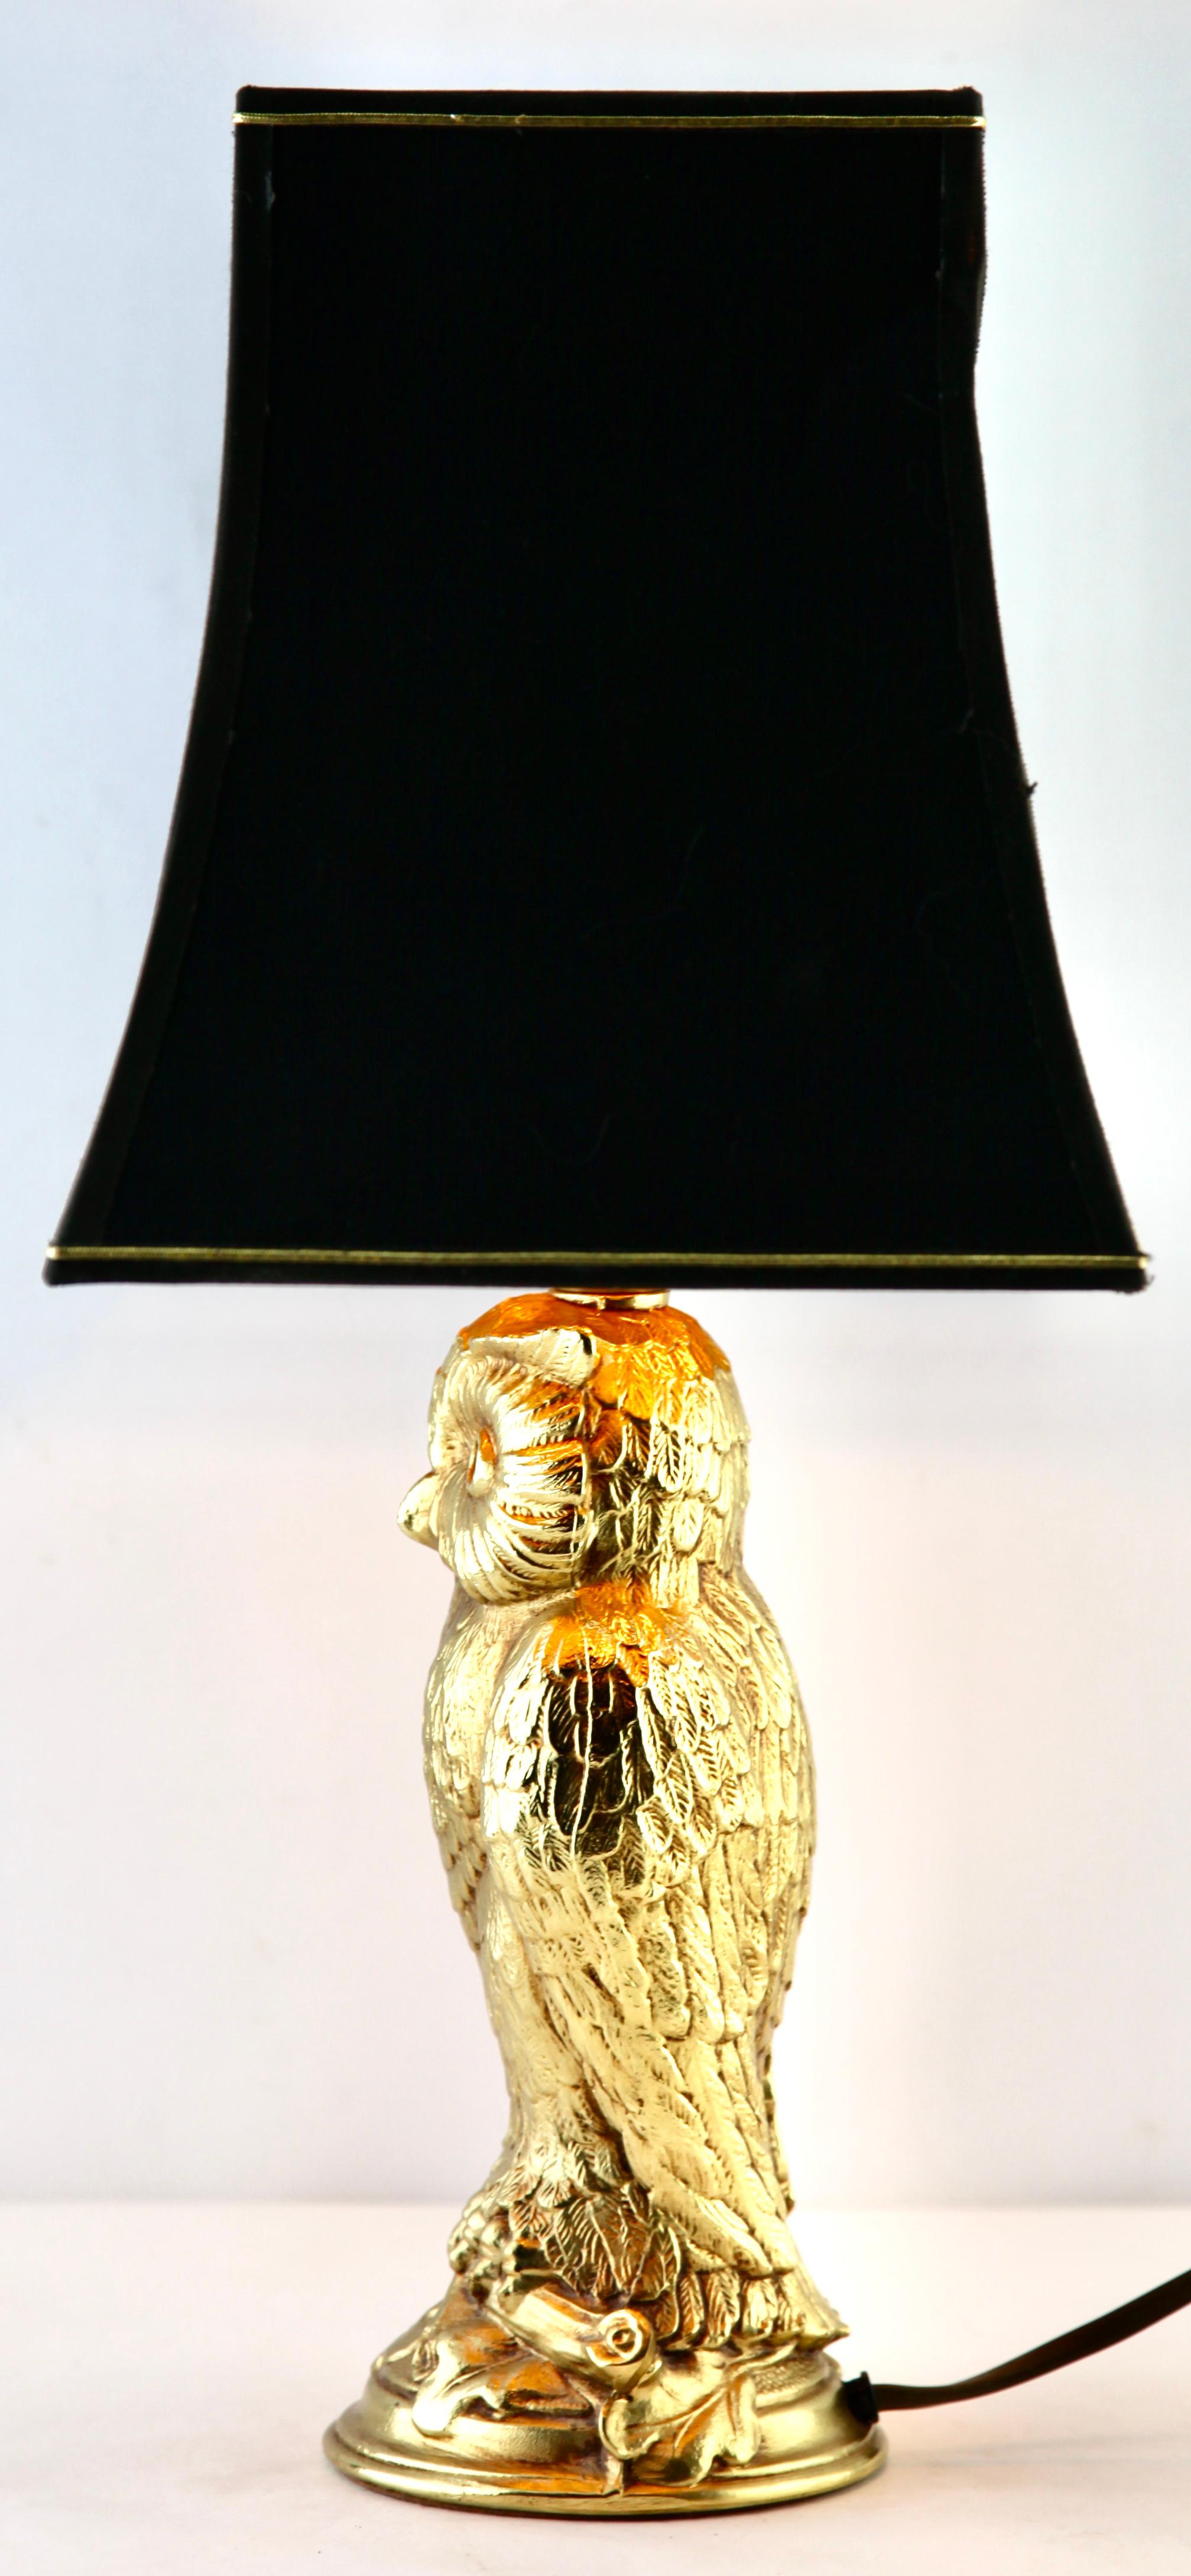 loevsky & loevsky lamp